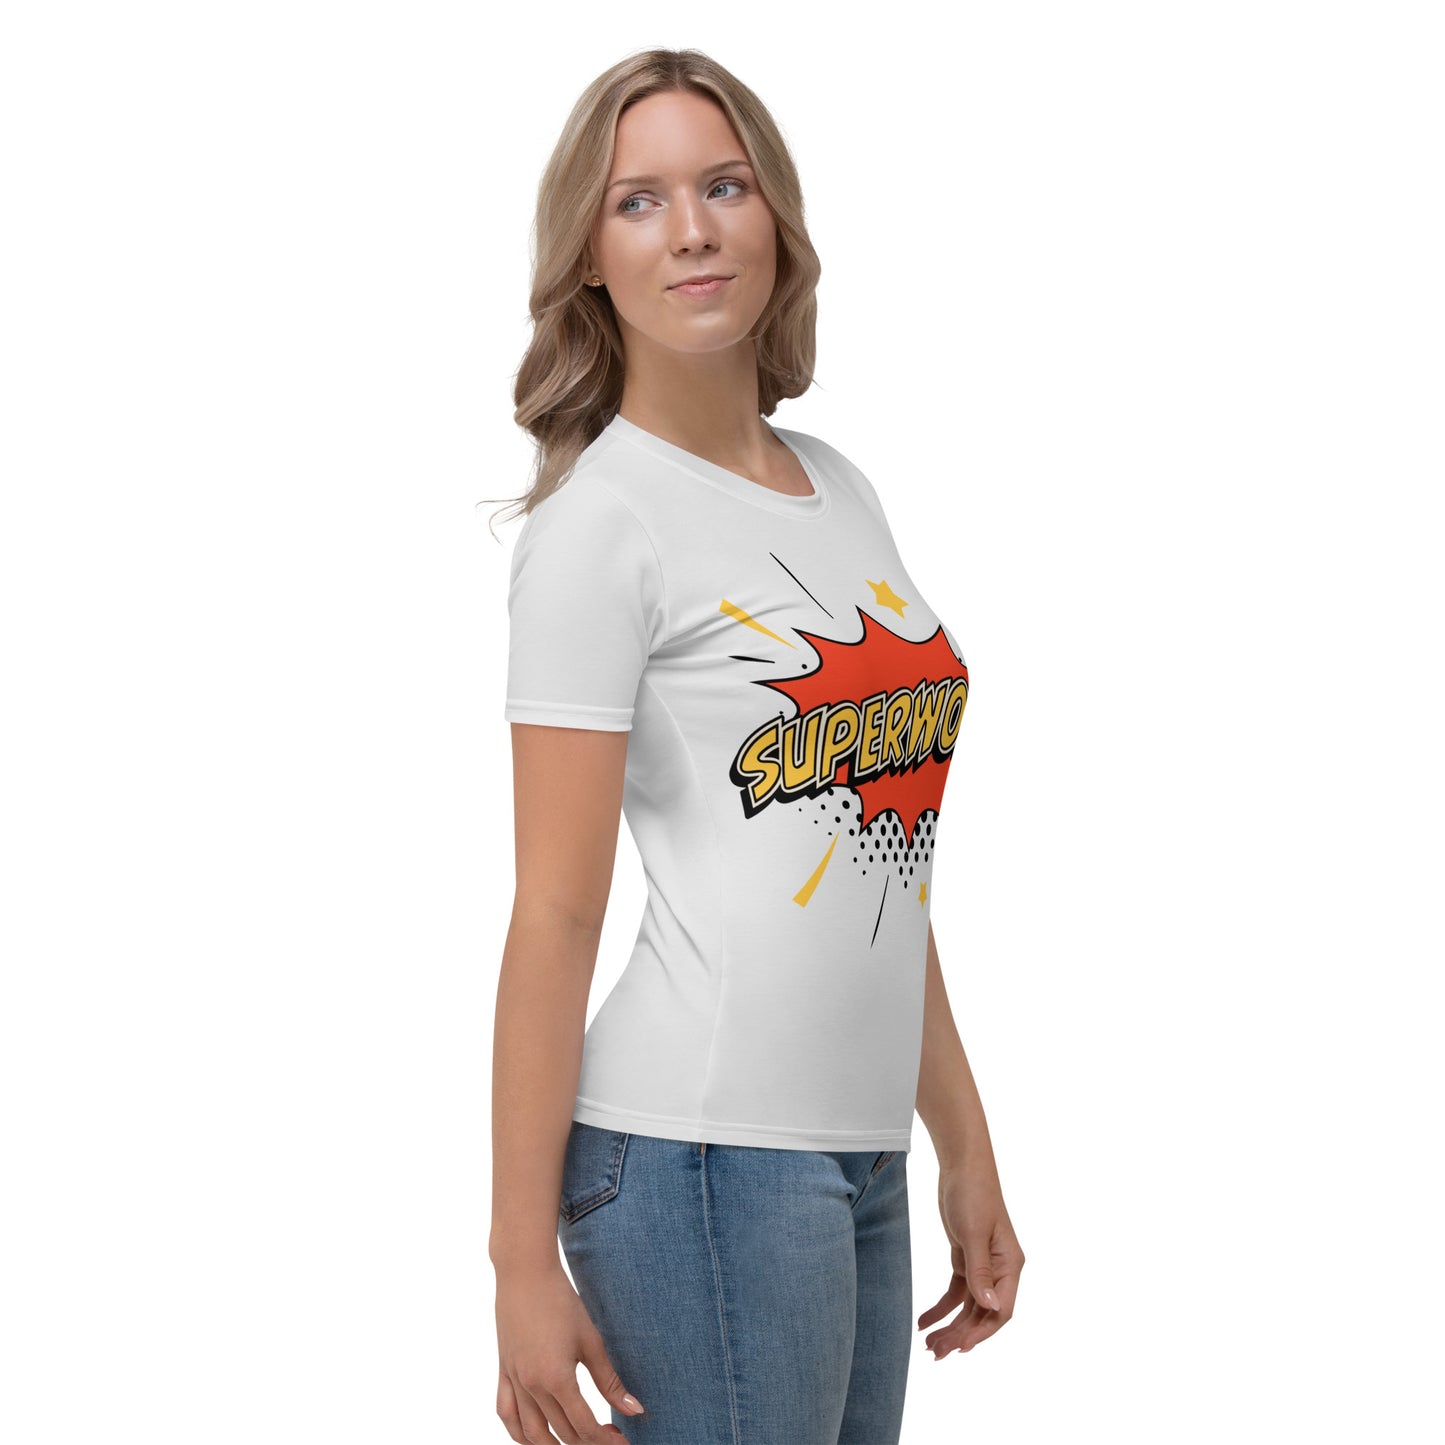 Super Women T-shirt